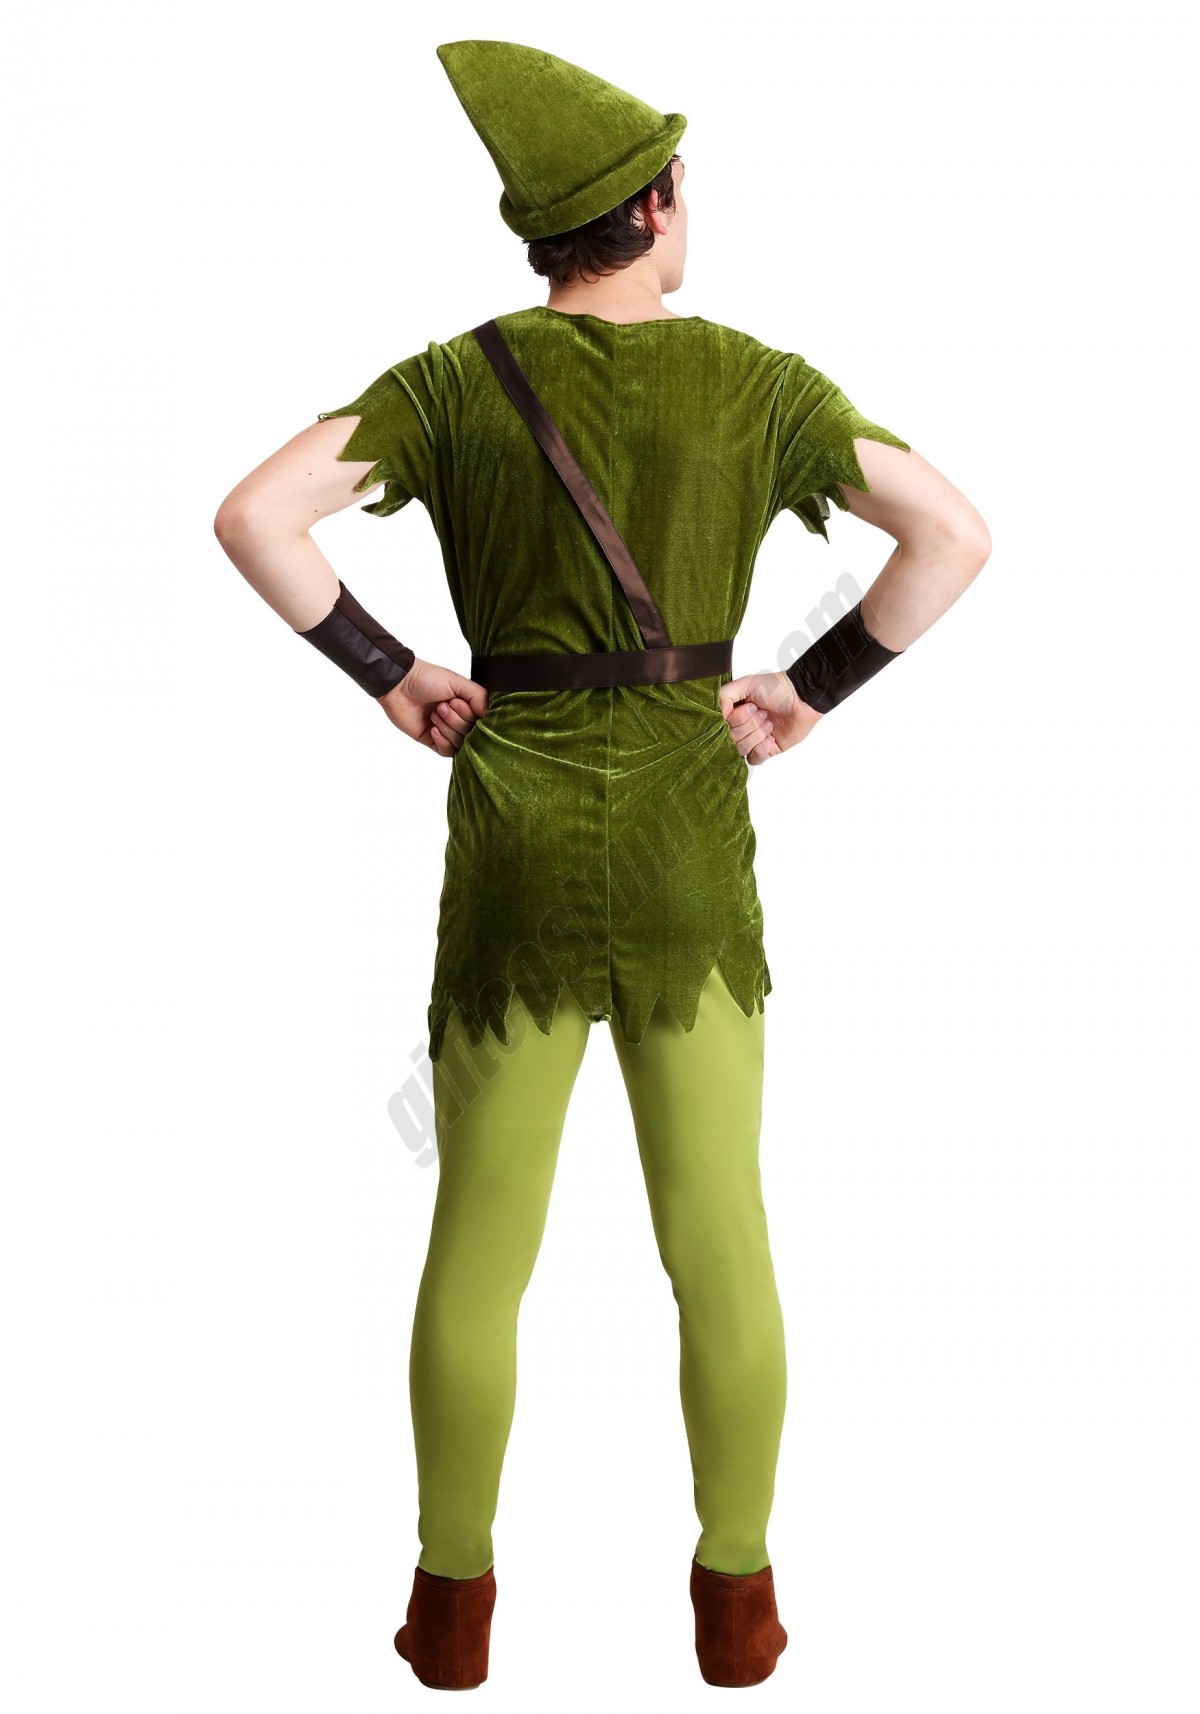 Adult Classic Peter Pan Costume - Men's - -1